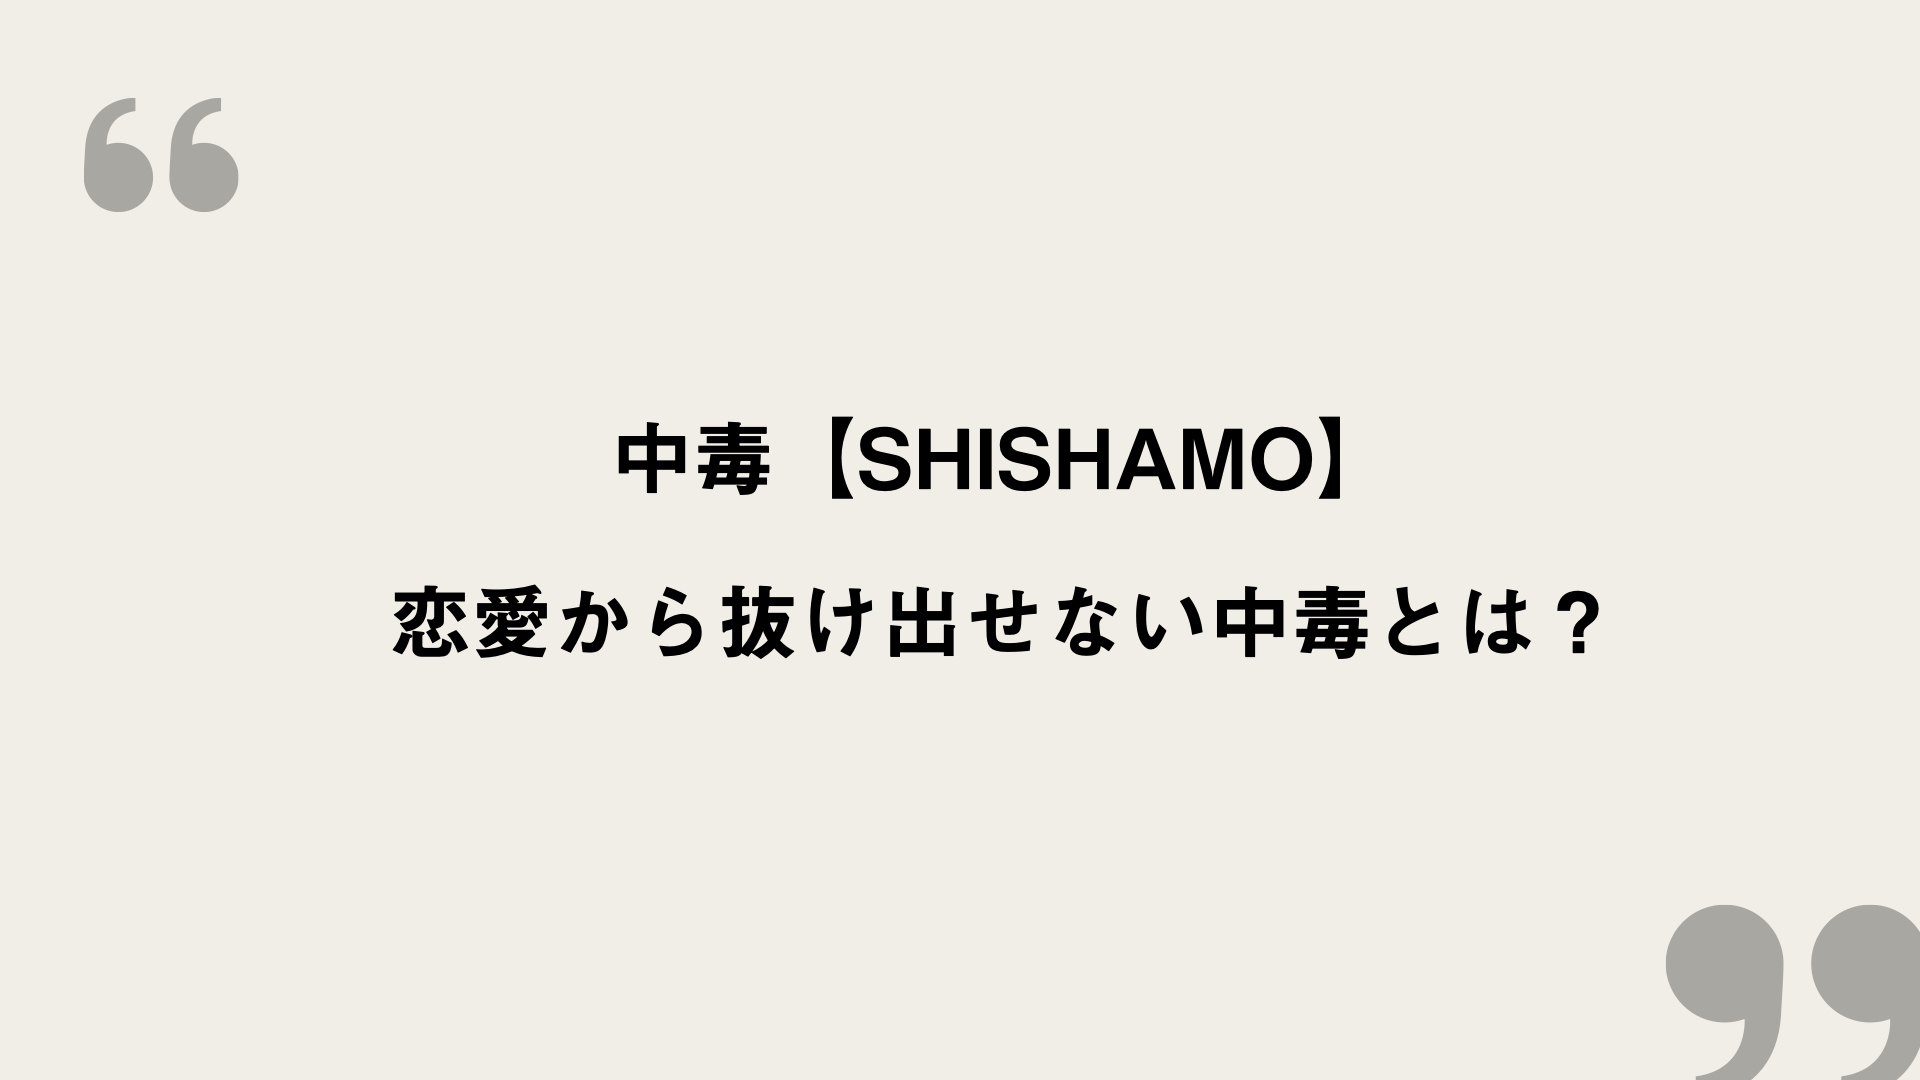 中毒 Shishamo 歌詞の意味を考察 恋愛から抜け出せない中毒とは Framu Media